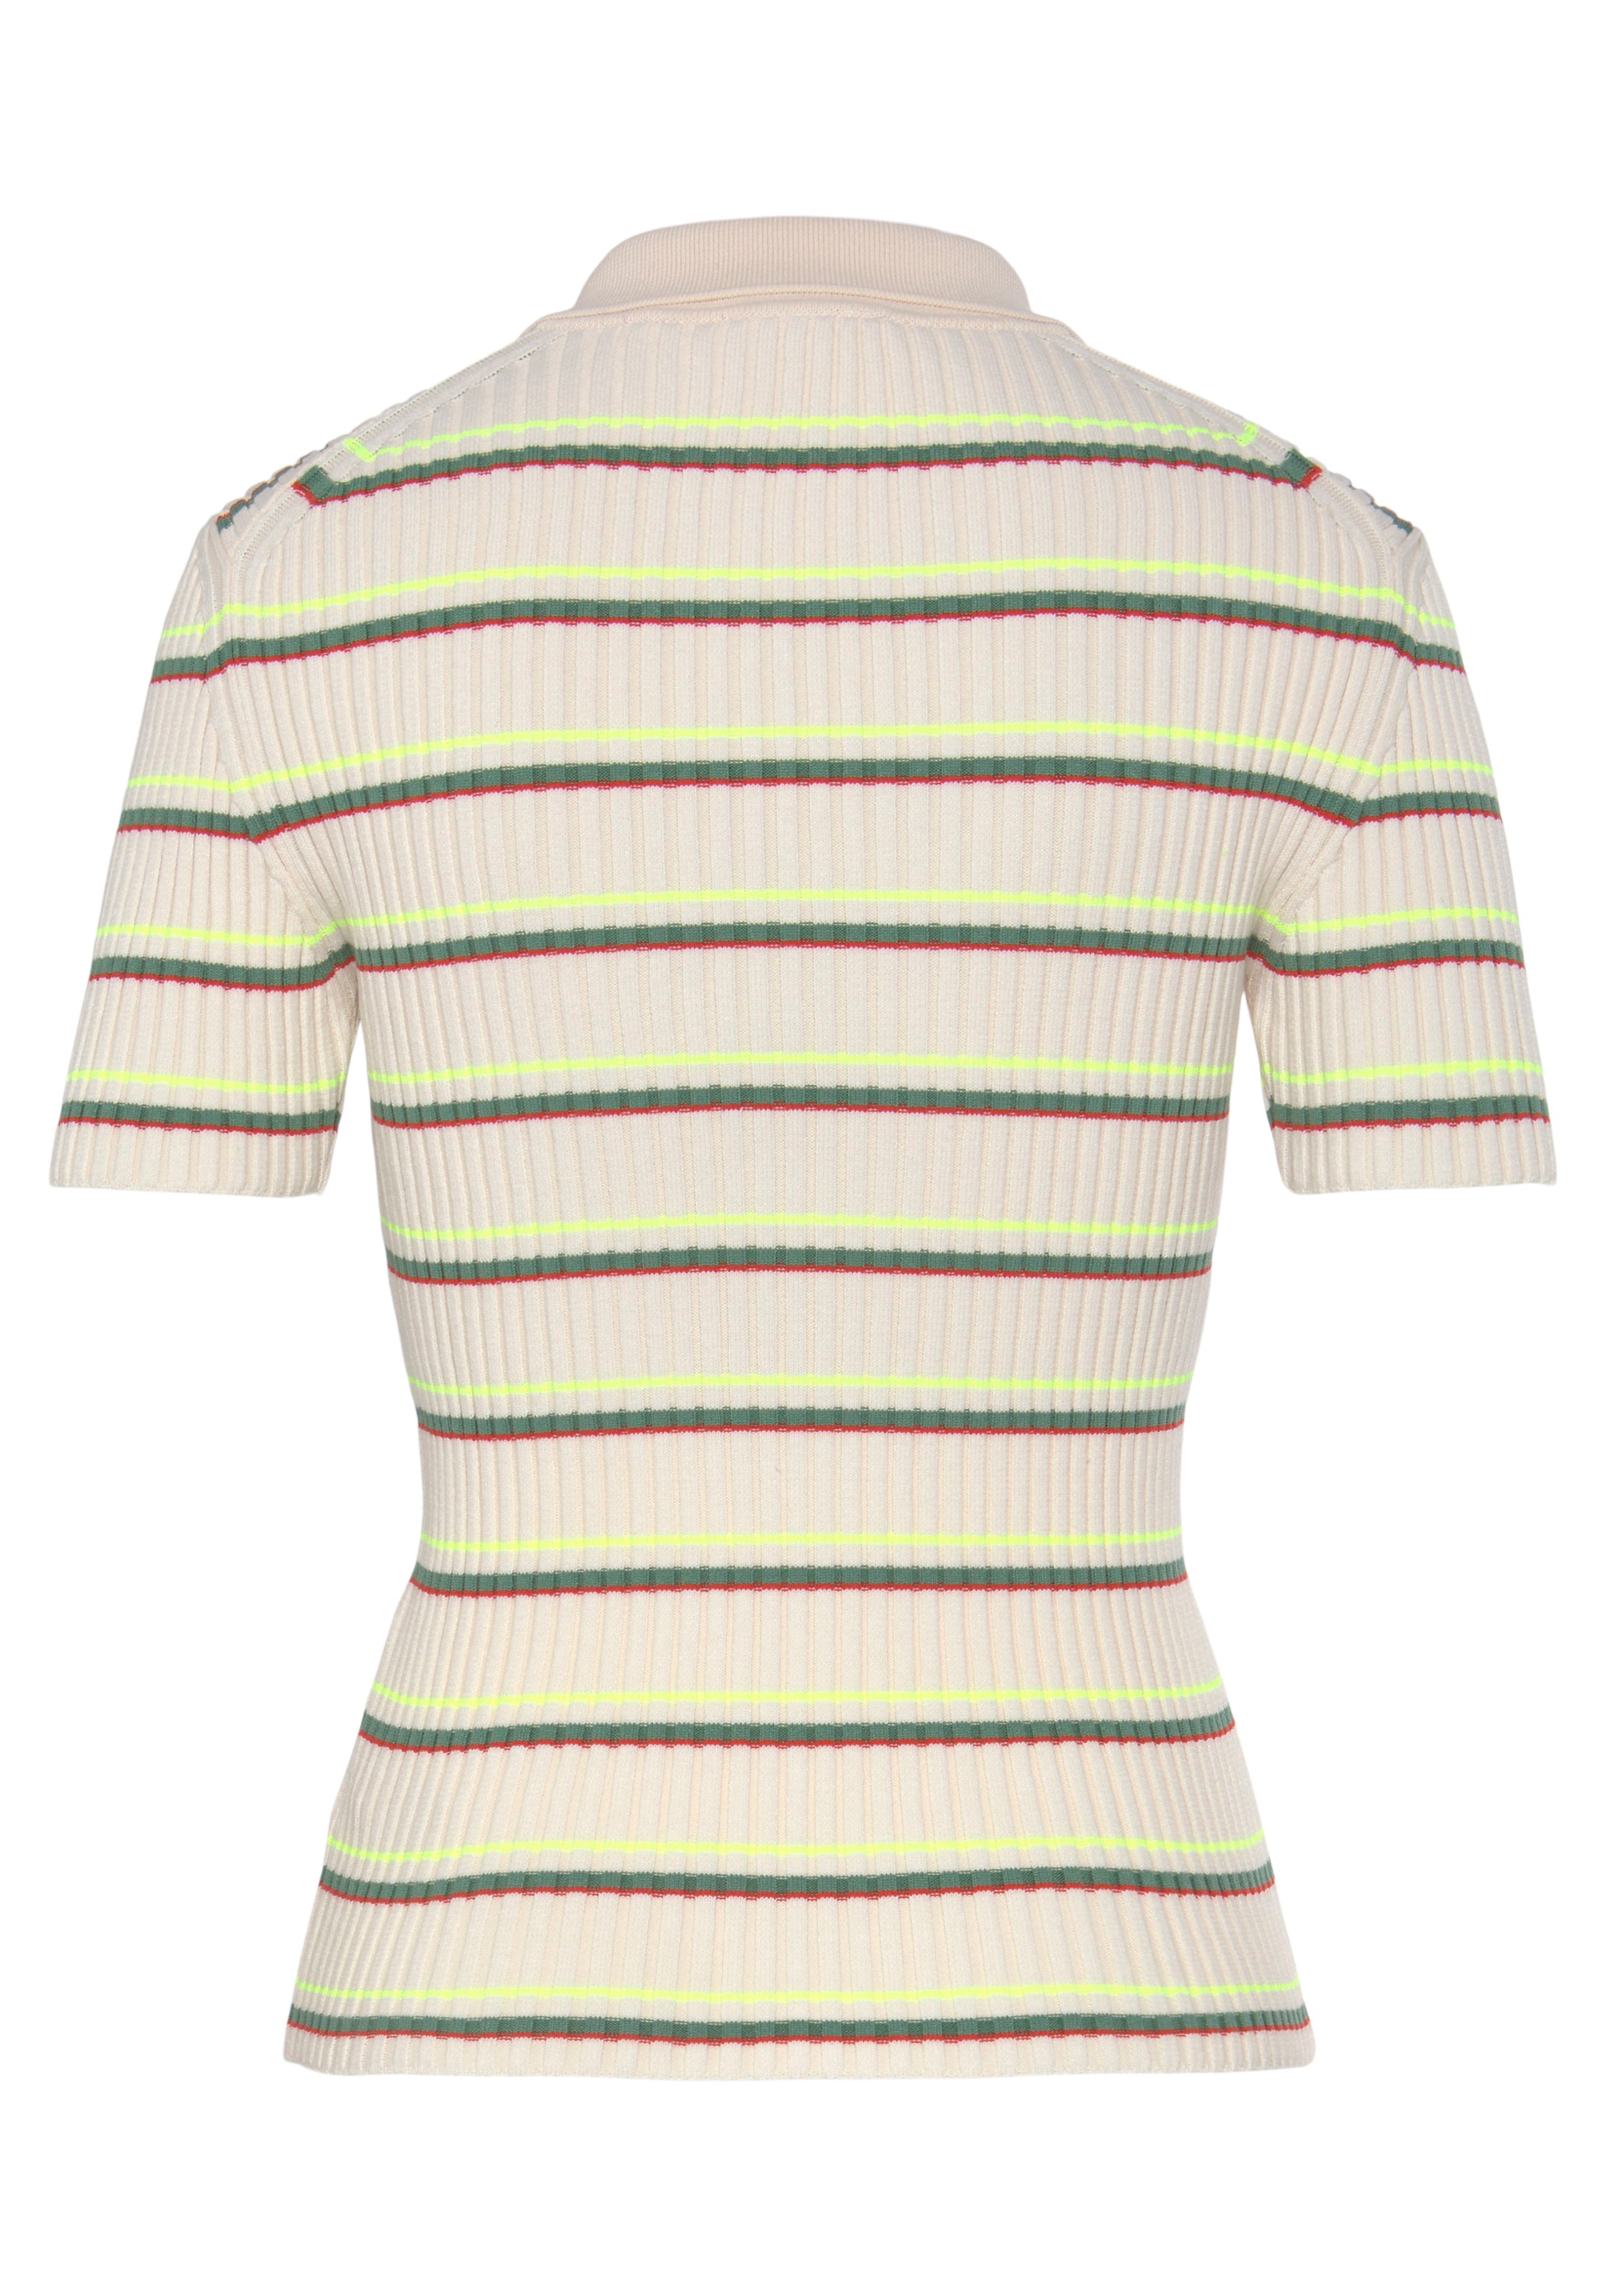 Lacoste Poloshirt, in gestreifter Optik, hochwertiger Baumwolle gefertigt  kaufen im OTTO Online Shop